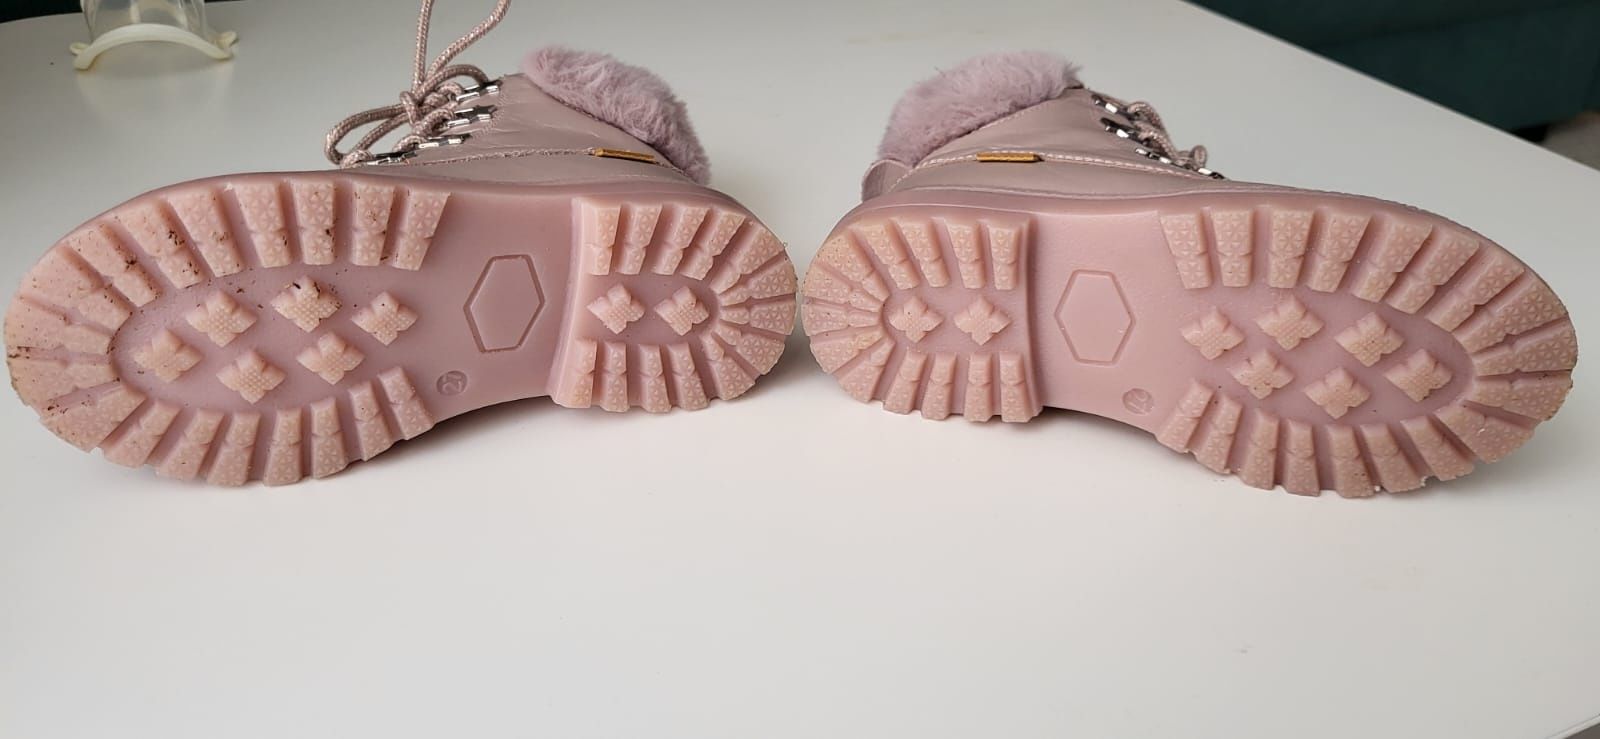 Buty Zimowe śniegowce Lasocki Kids r.27 dla dziewczynki różowe skórzan